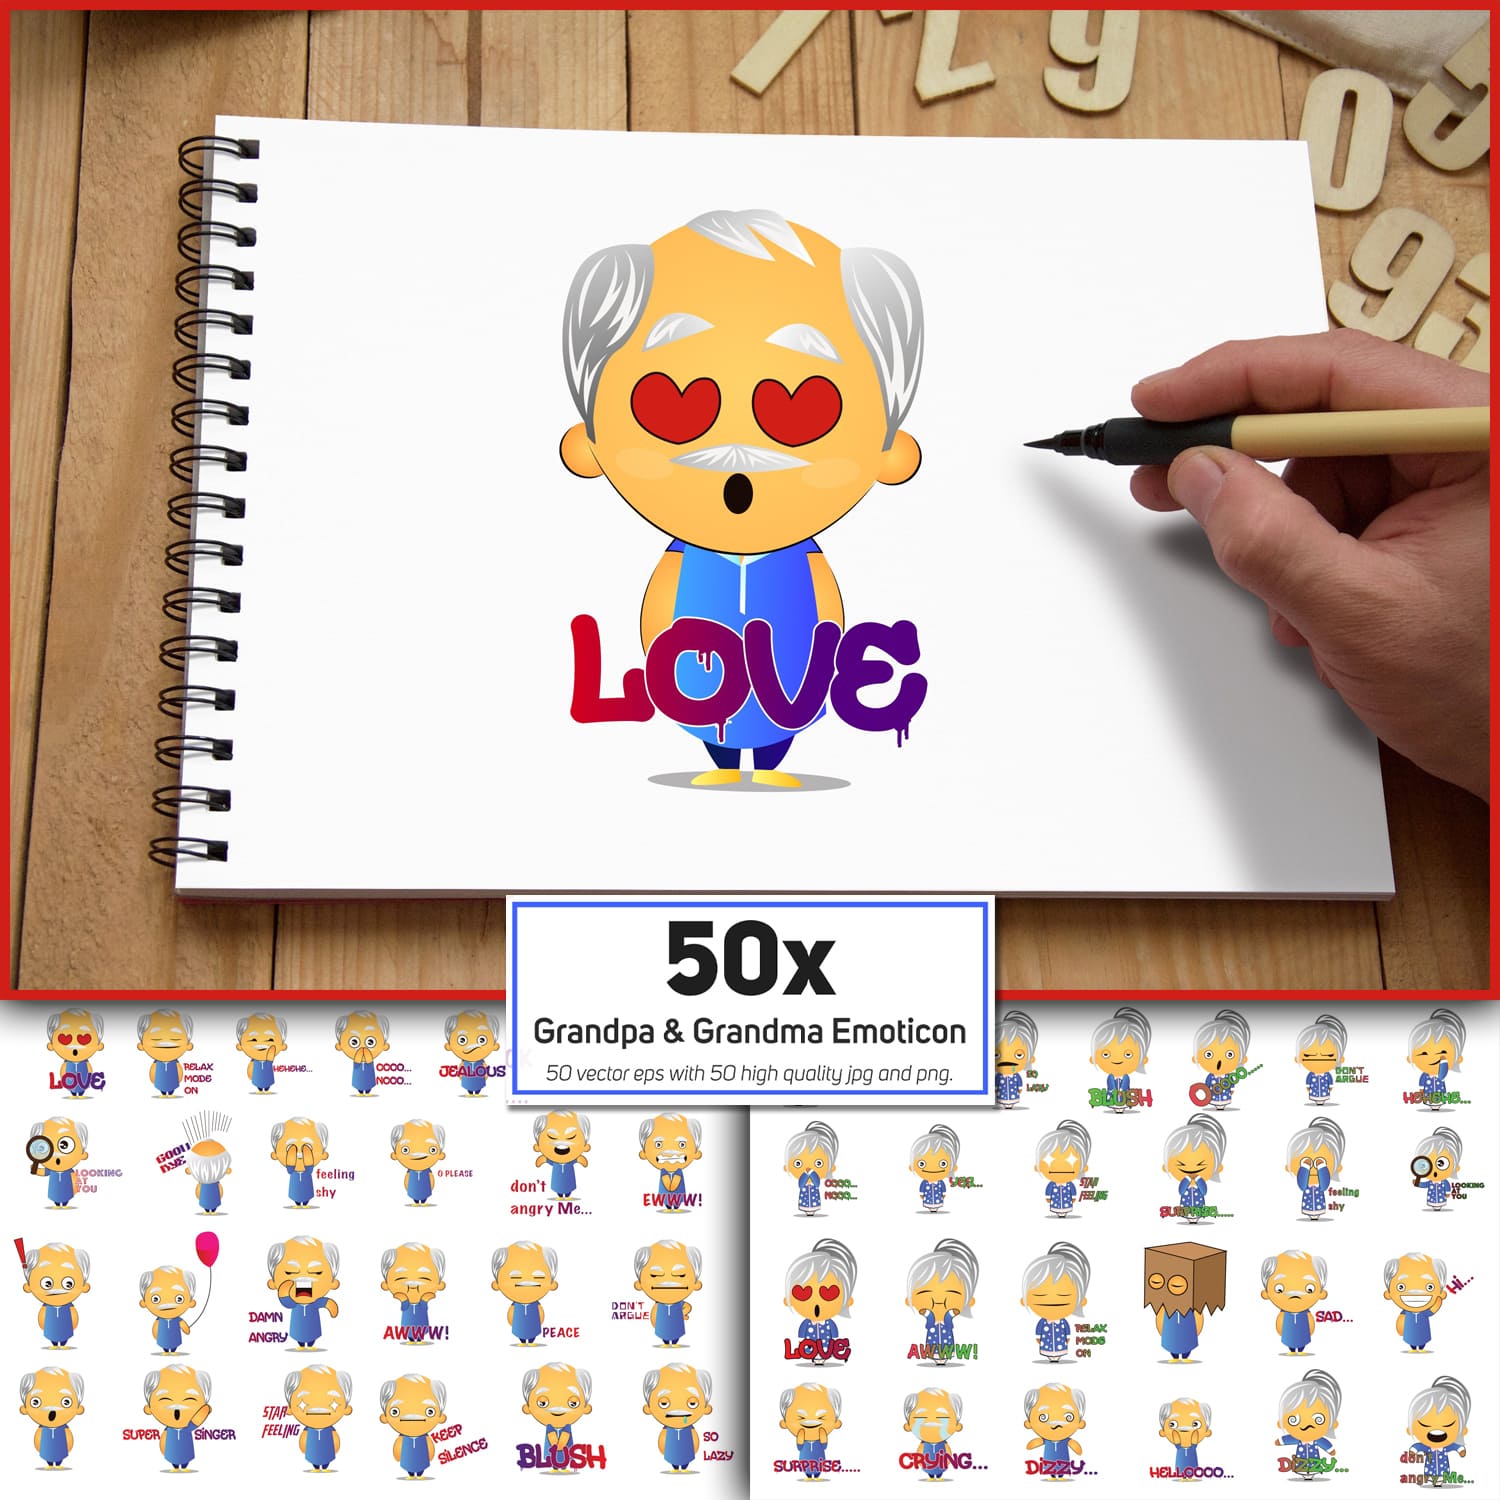 50x Grandpa and Grandma Emoticon and Sticker collection cover.